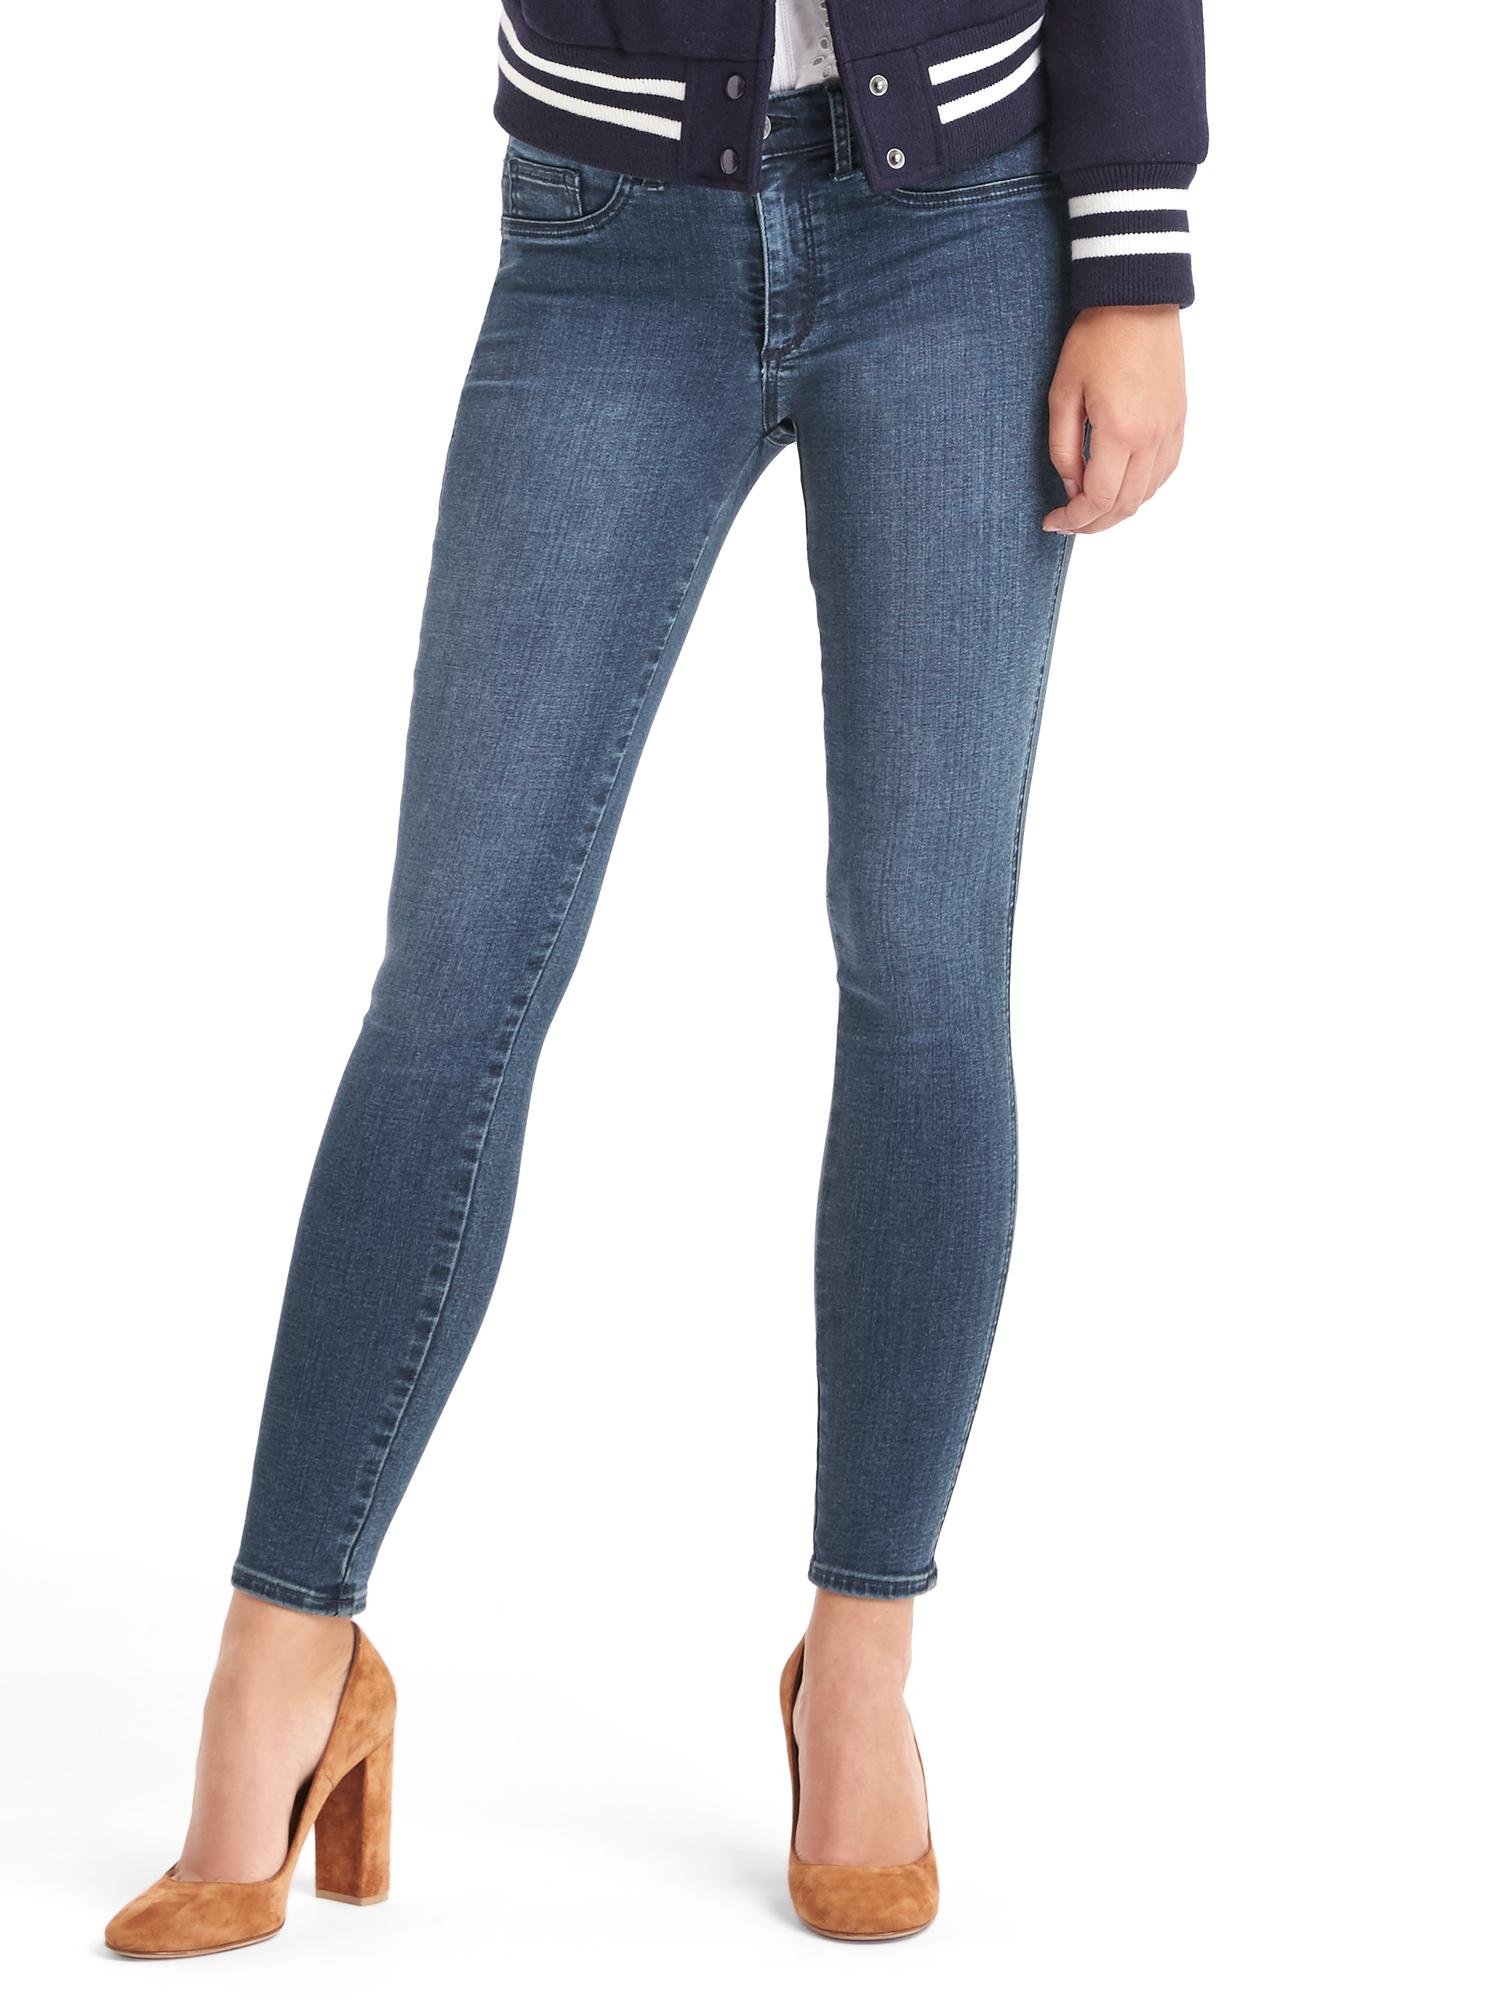 Orta bel legging jean pantolobn product image